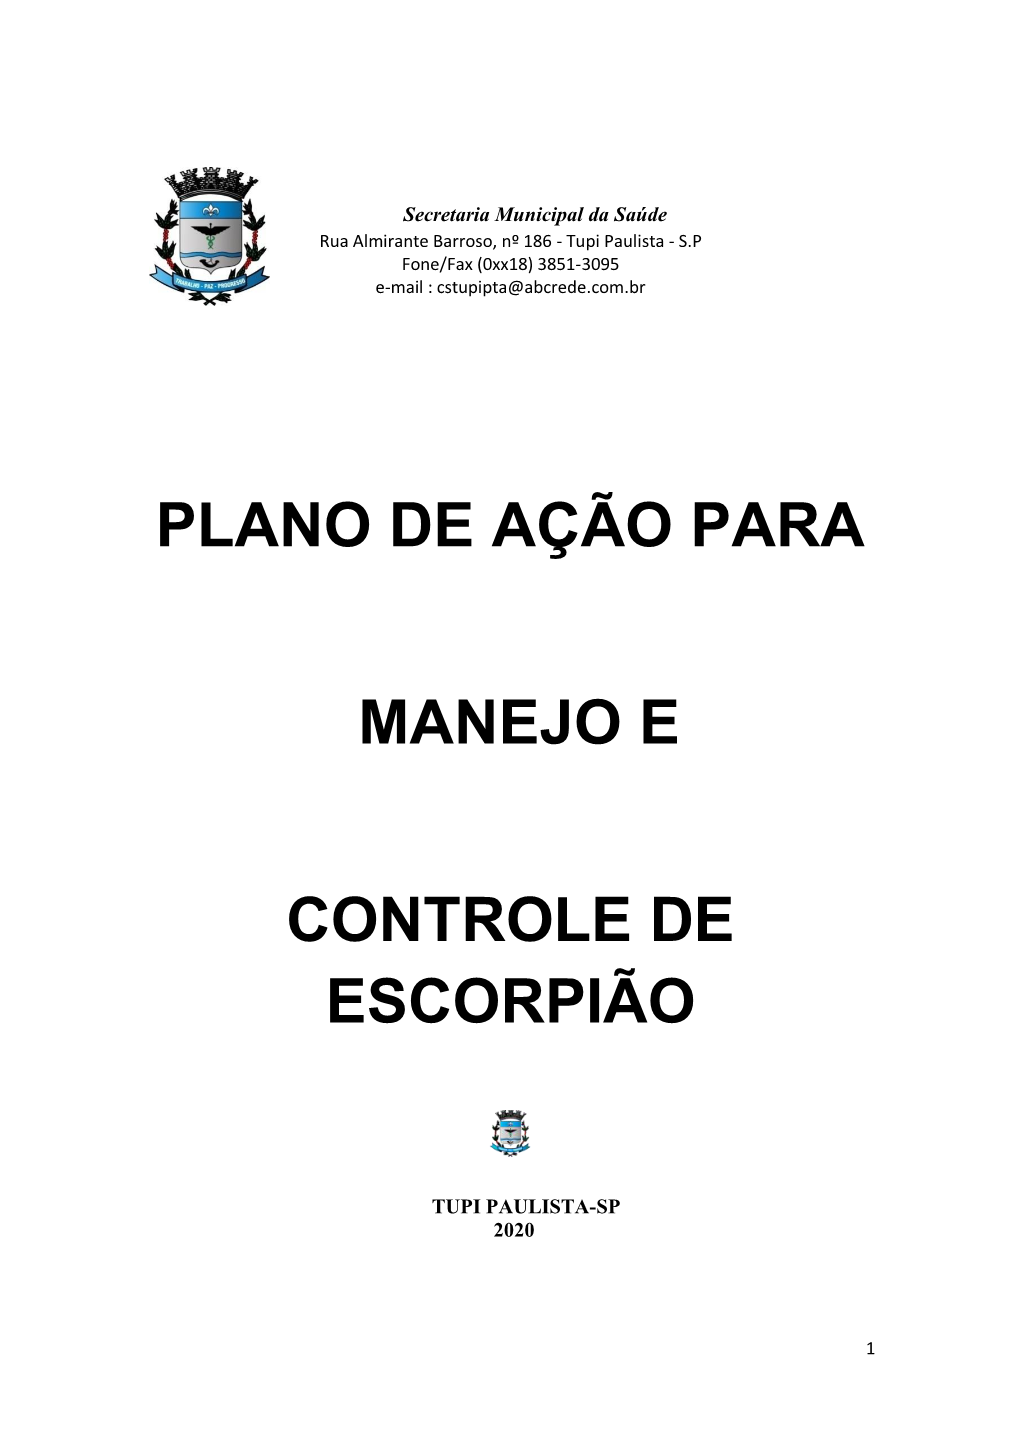 Tupi Paulista - S.P Fone/Fax (0Xx18) 3851-3095 E-Mail : Cstupipta@Abcrede.Com.Br